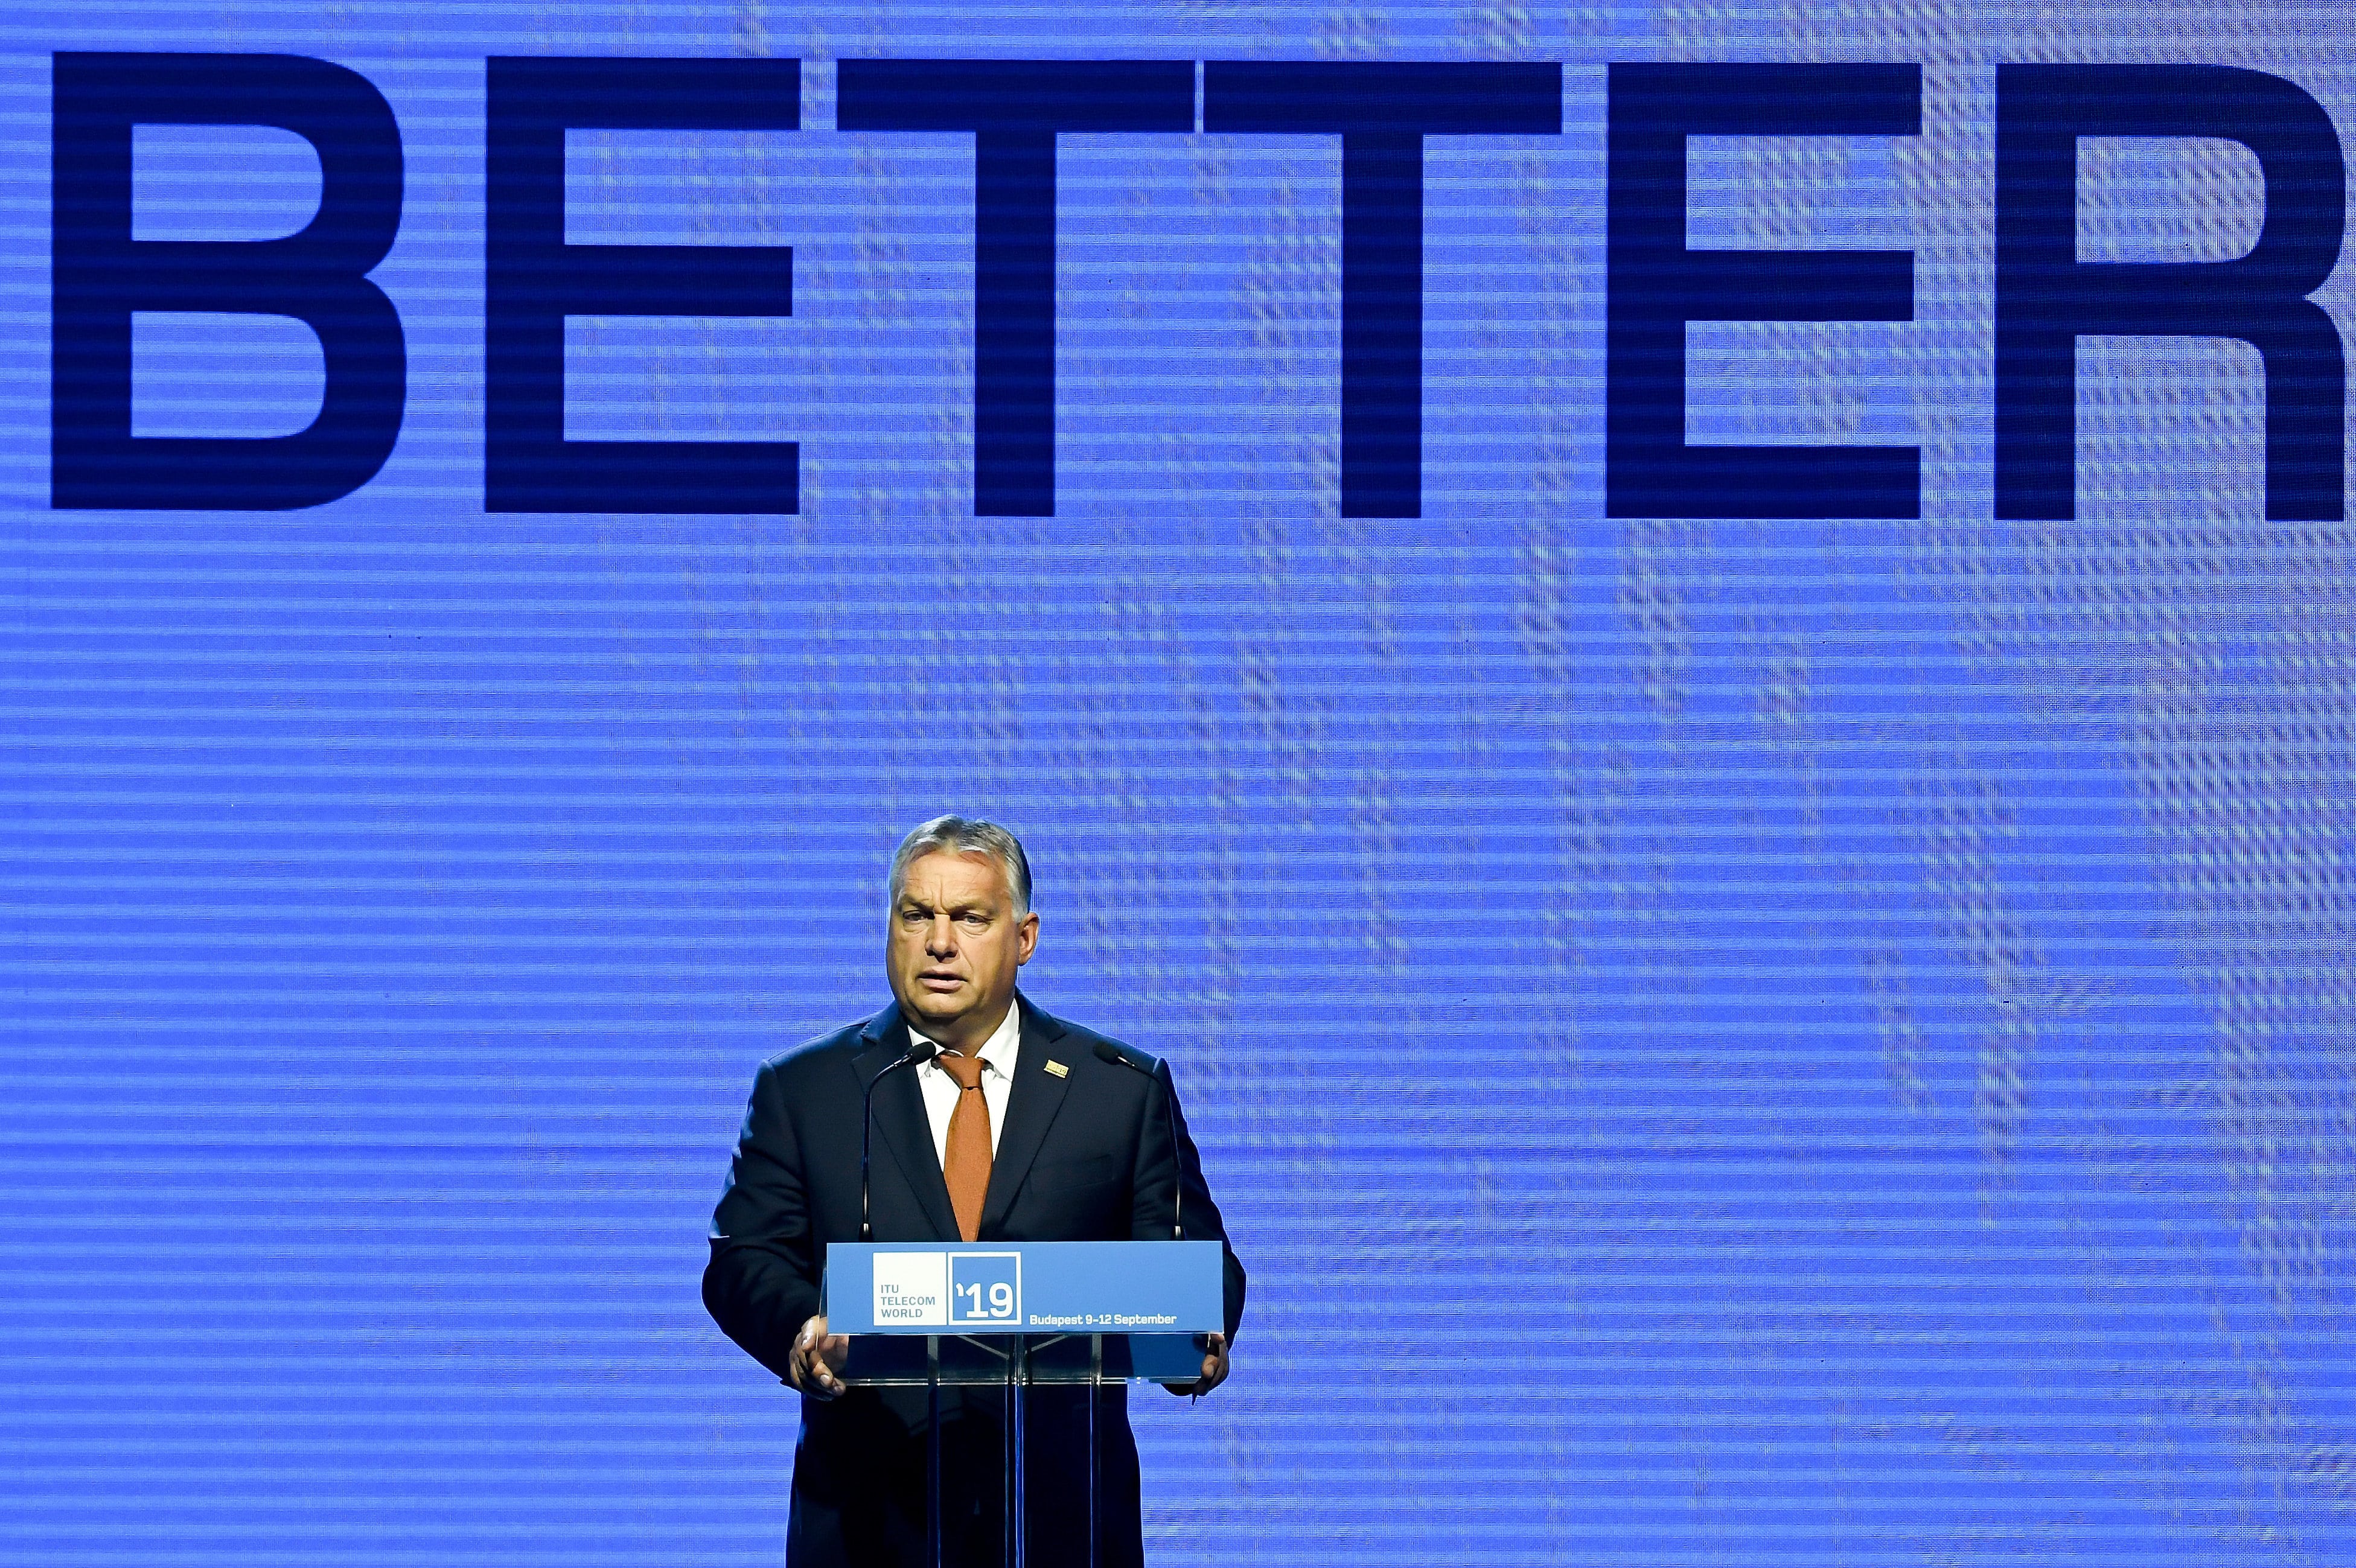 رئيس الوزراء أوربان يفتتح مؤتمر تليكوم العالمي للاتحاد الدولي للاتصالات في بودابست